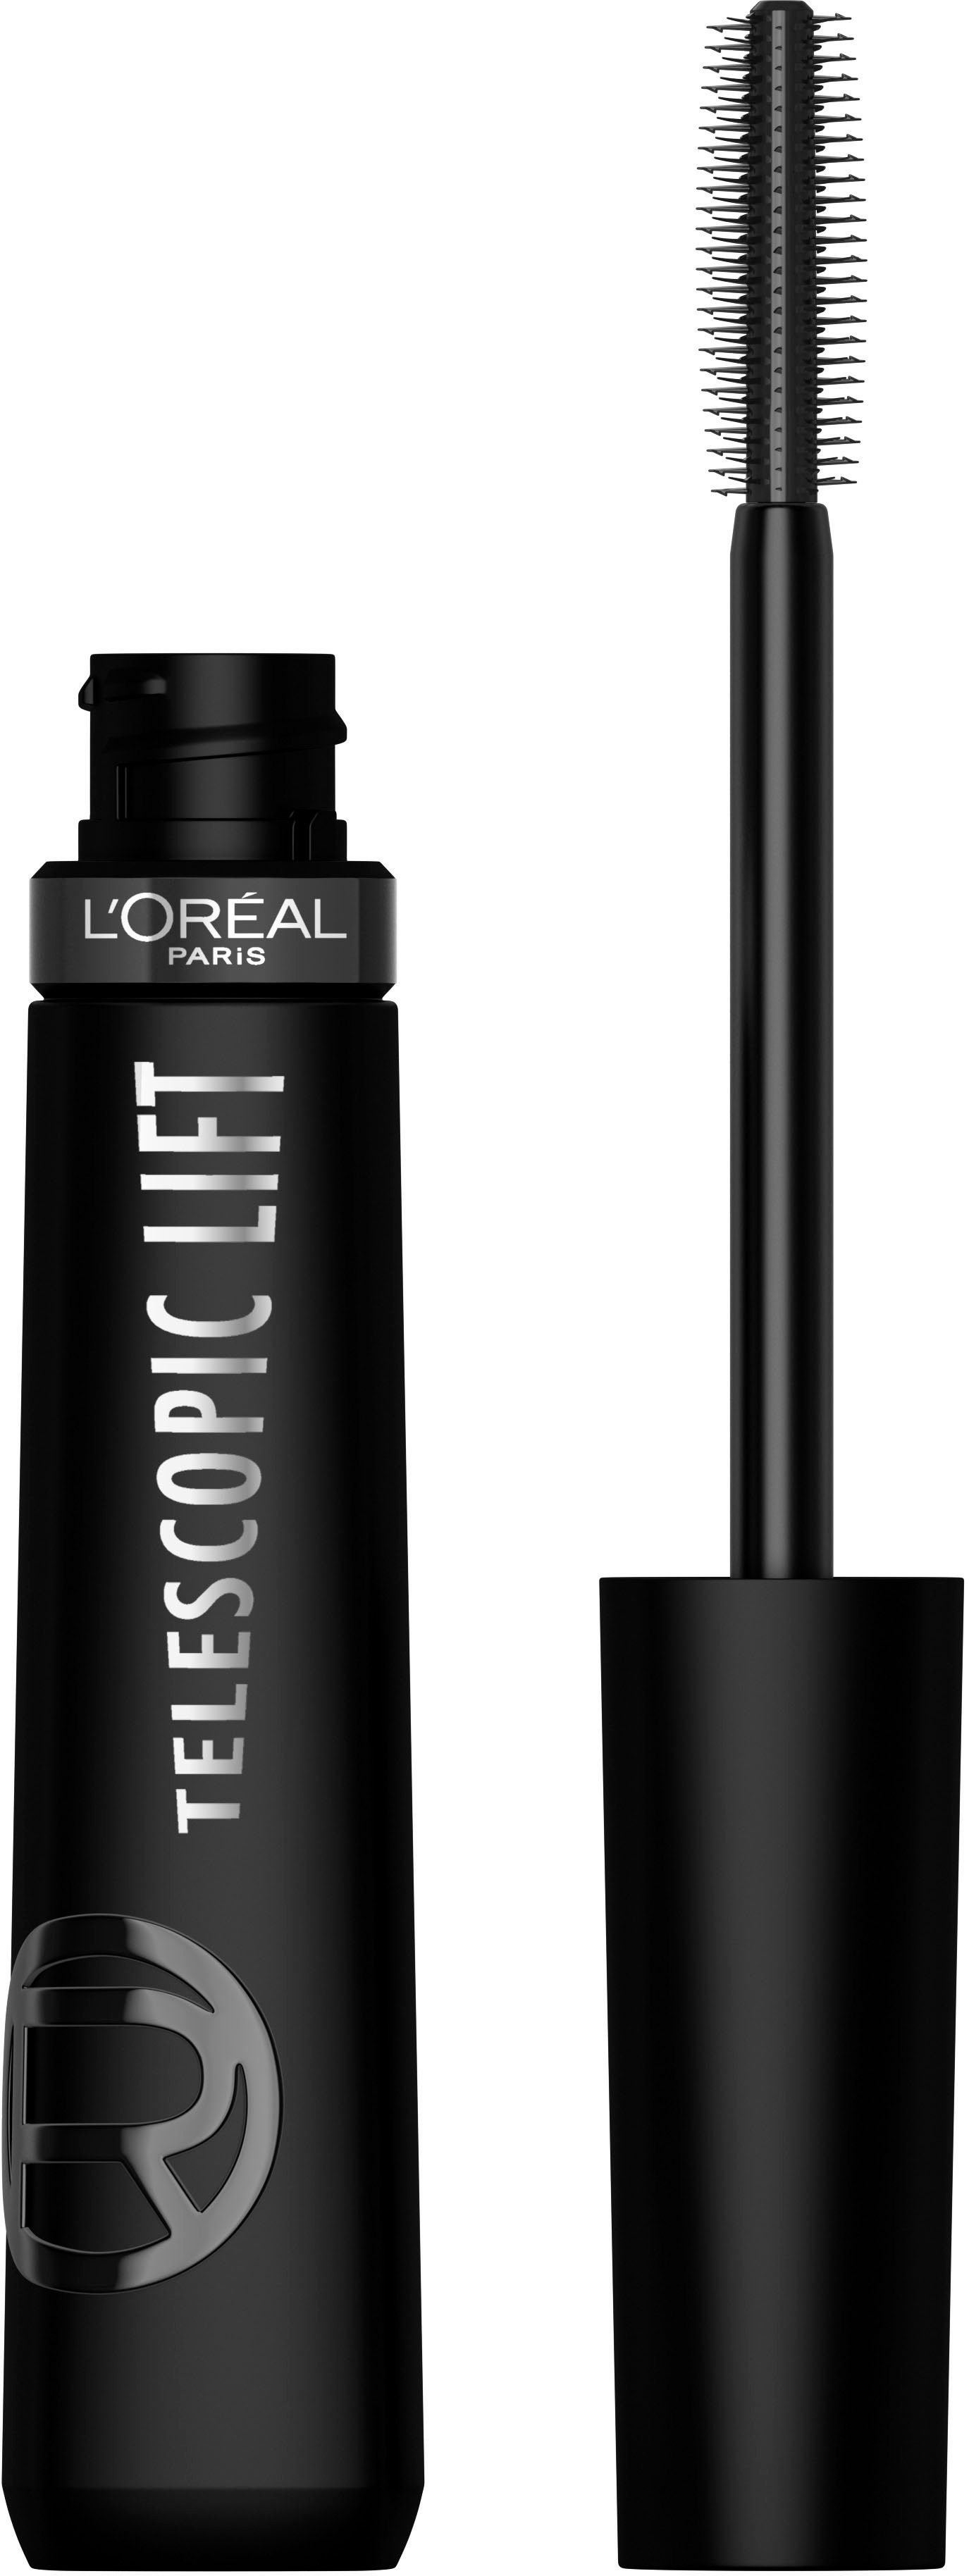 L'ORÉAL PARIS Mascara L'Oréal mit Paris Black Lift Telescopic Mascara, Lifting-Effekt Wimperntusche Extra